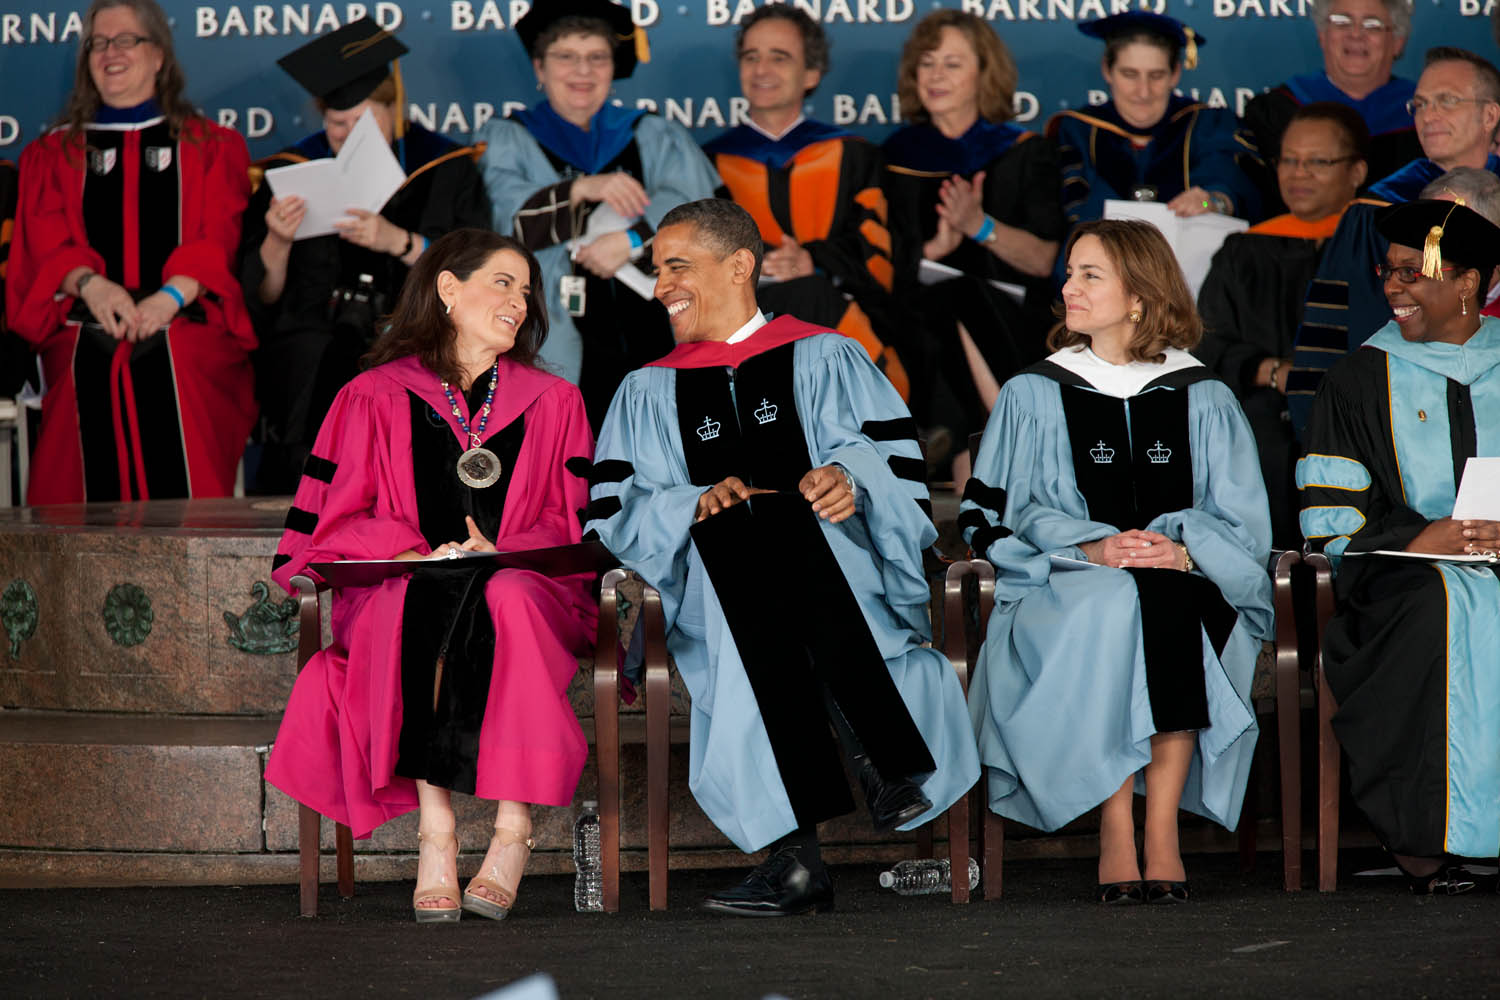 President Barack Obama sits with Barnard College President Debora Spar (May 14, 2012)